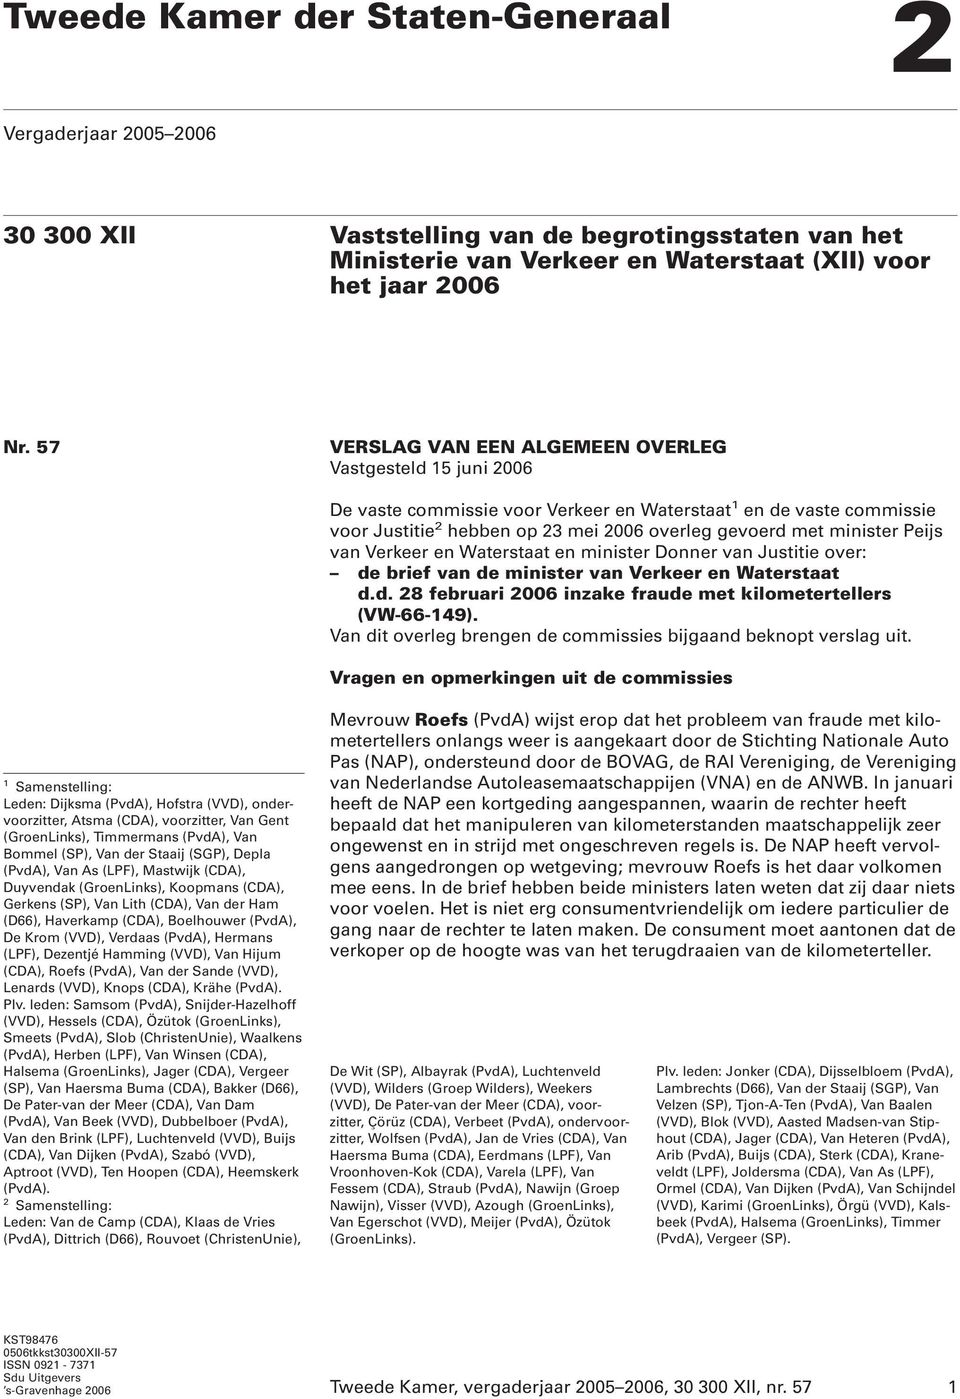 Peijs van Verkeer en Waterstaat en minister Donner van Justitie over: de brief van de minister van Verkeer en Waterstaat d.d. 28 februari 2006 inzake fraude met kilometertellers (VW-66-149).